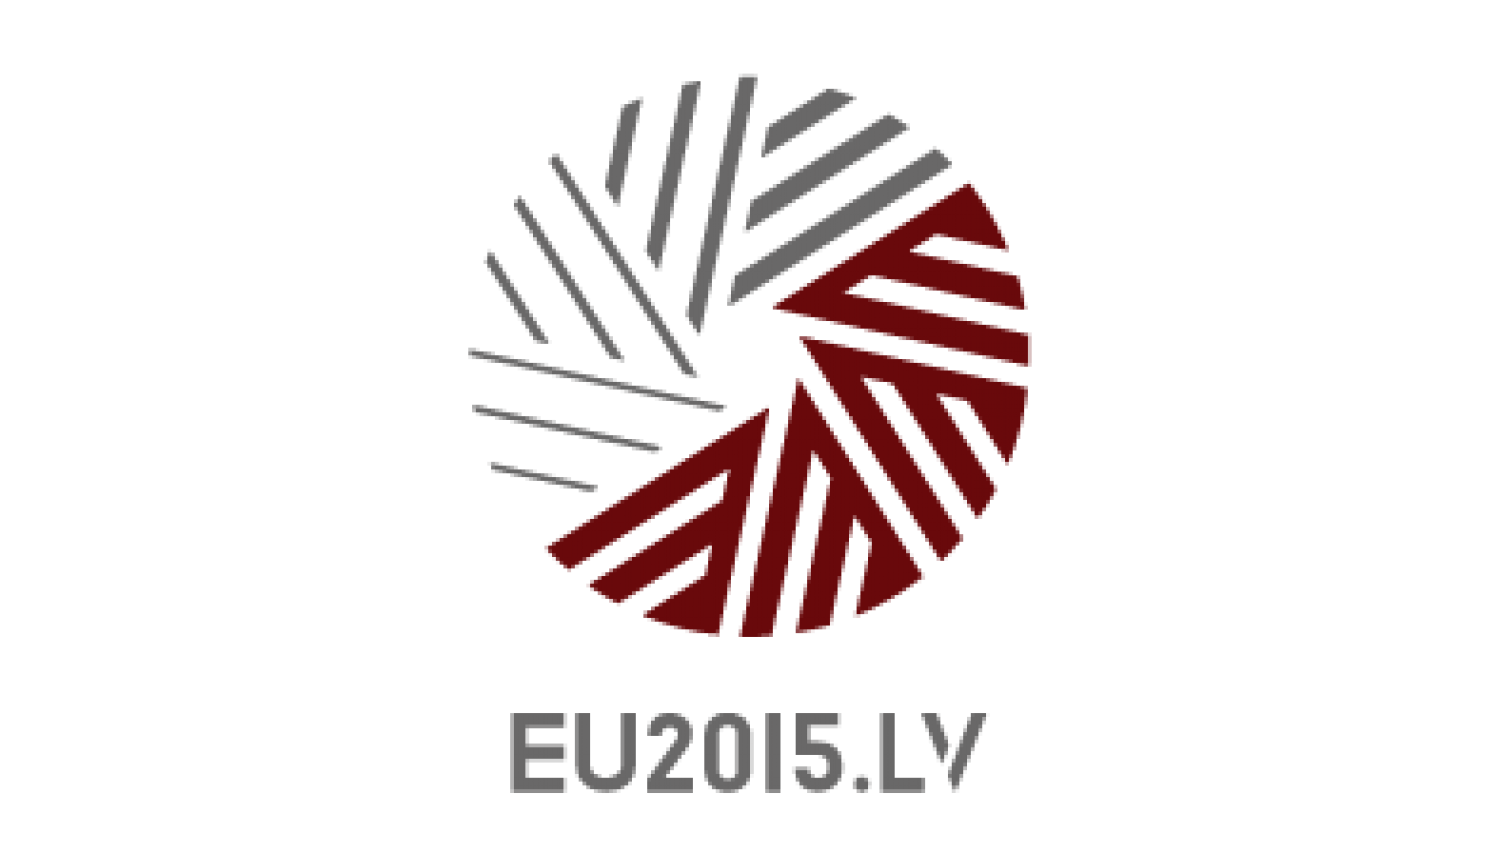 eu2015.lv logo